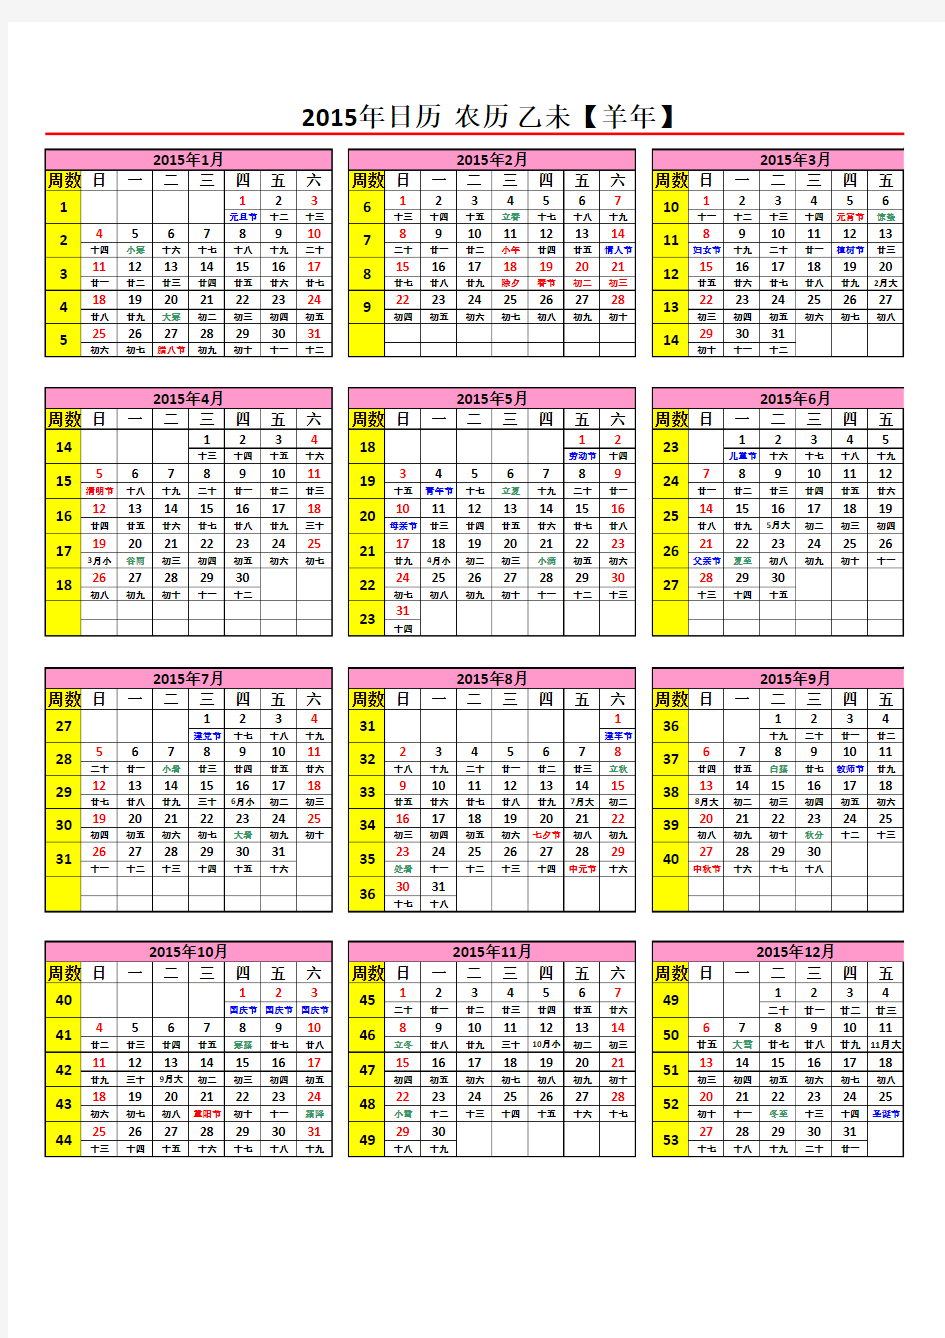 2014,15日历年历(A4一页_含农历节气假日周数等)